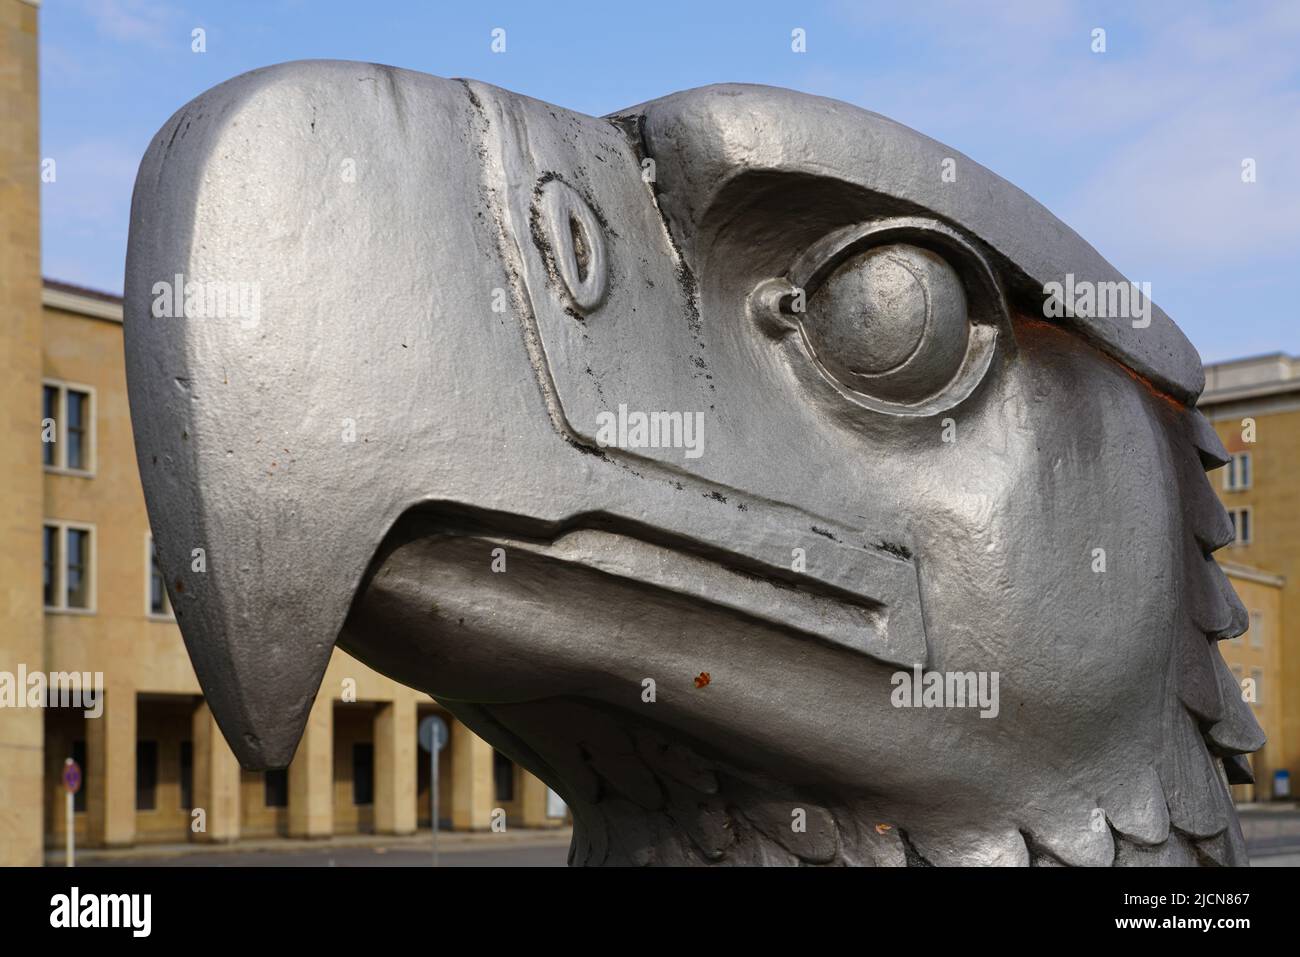 Frente al antiguo edificio de la terminal del aeropuerto de Tempelhof se encuentra la Plaza del Águila, una escultura de 4,50 metros de altura con cabeza de águila. Berlín, Alemania, 1.5.22 Foto de stock